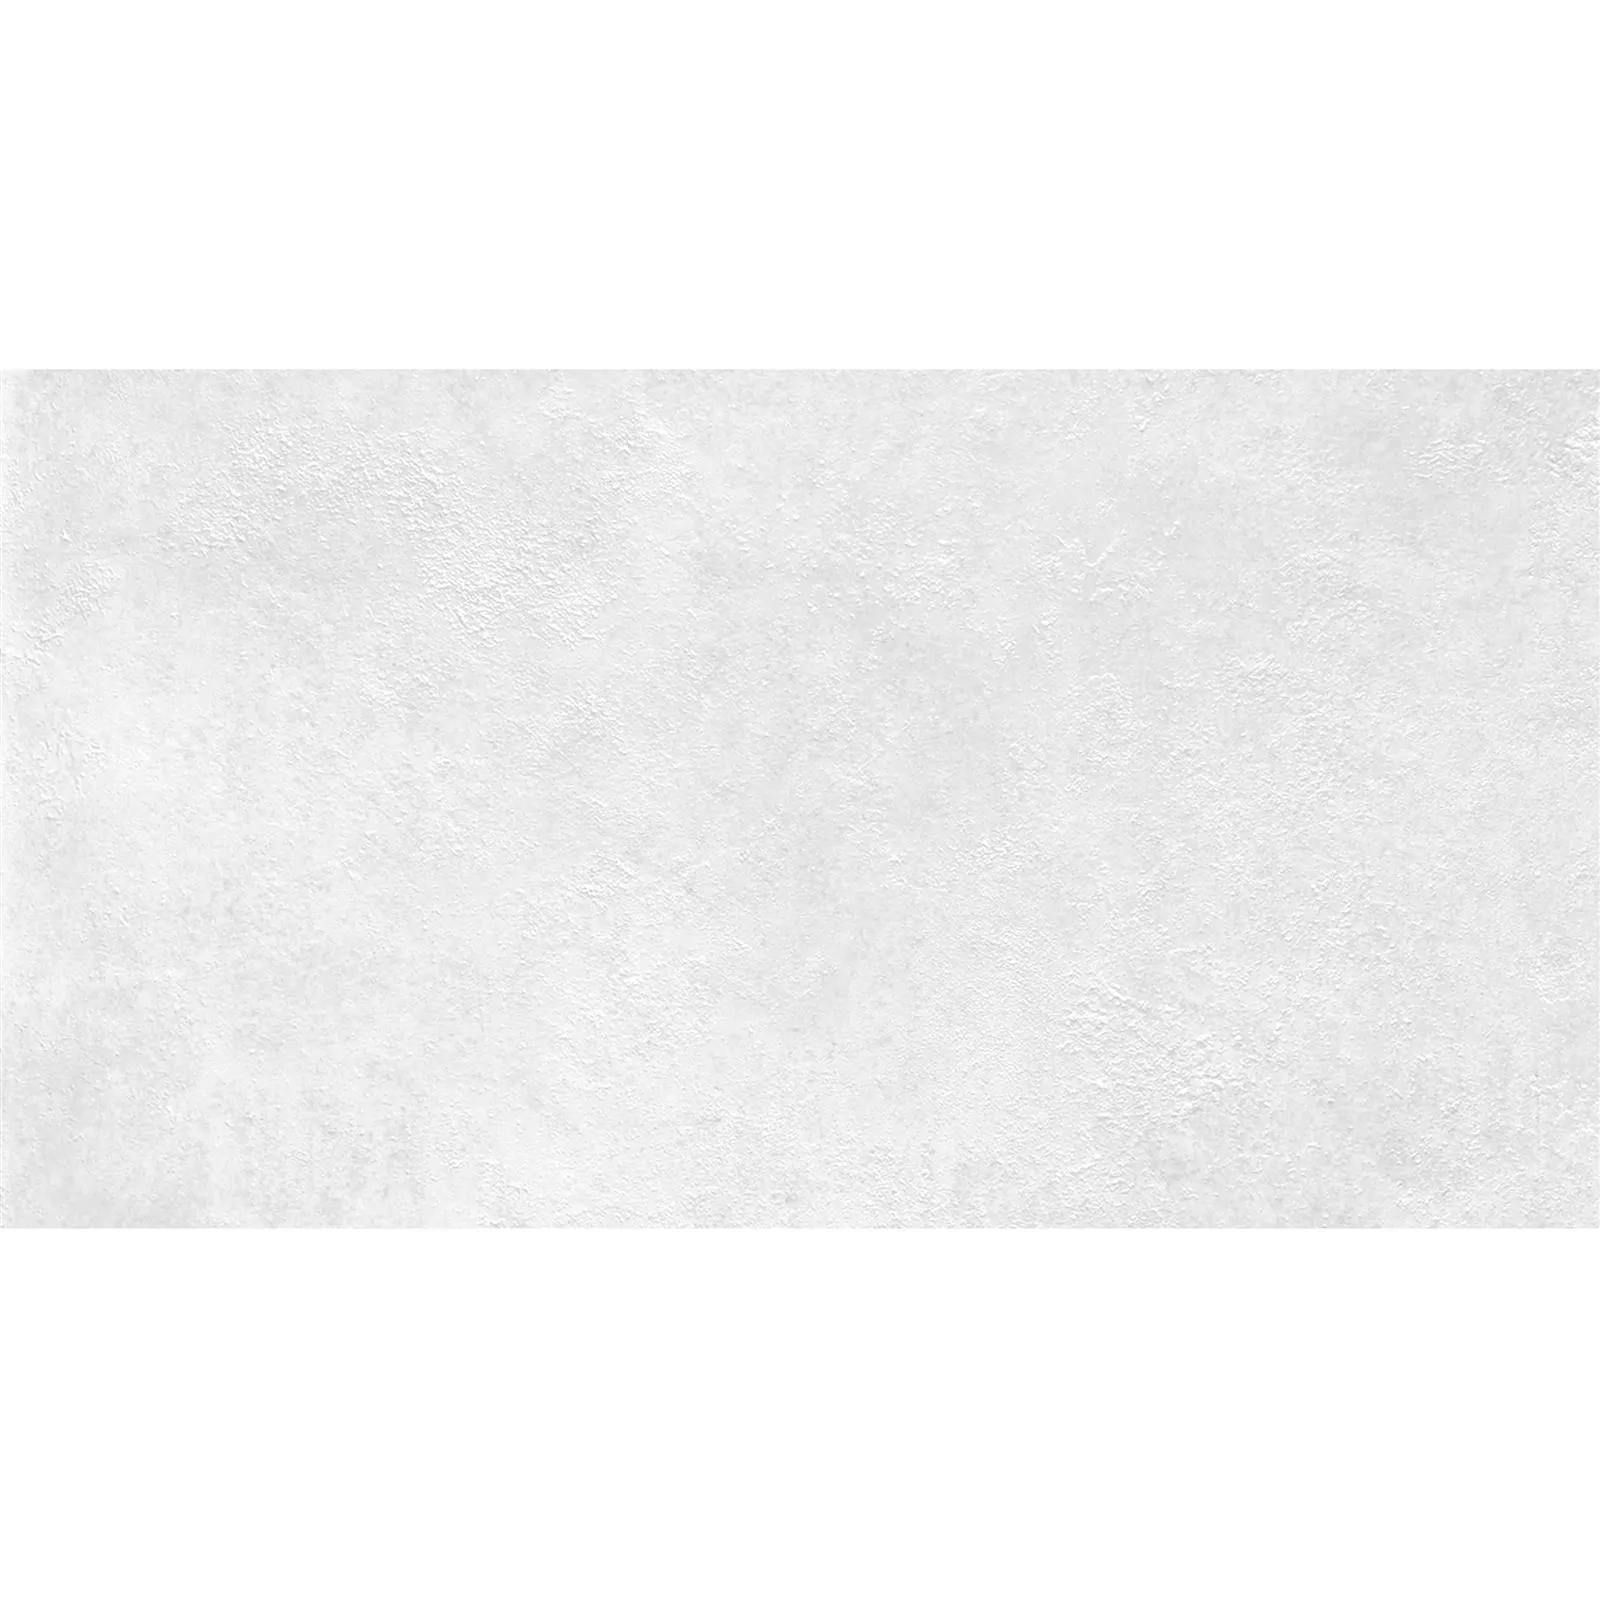 Wandfliesen Alexander Steinoptik Weiß 30x60cm